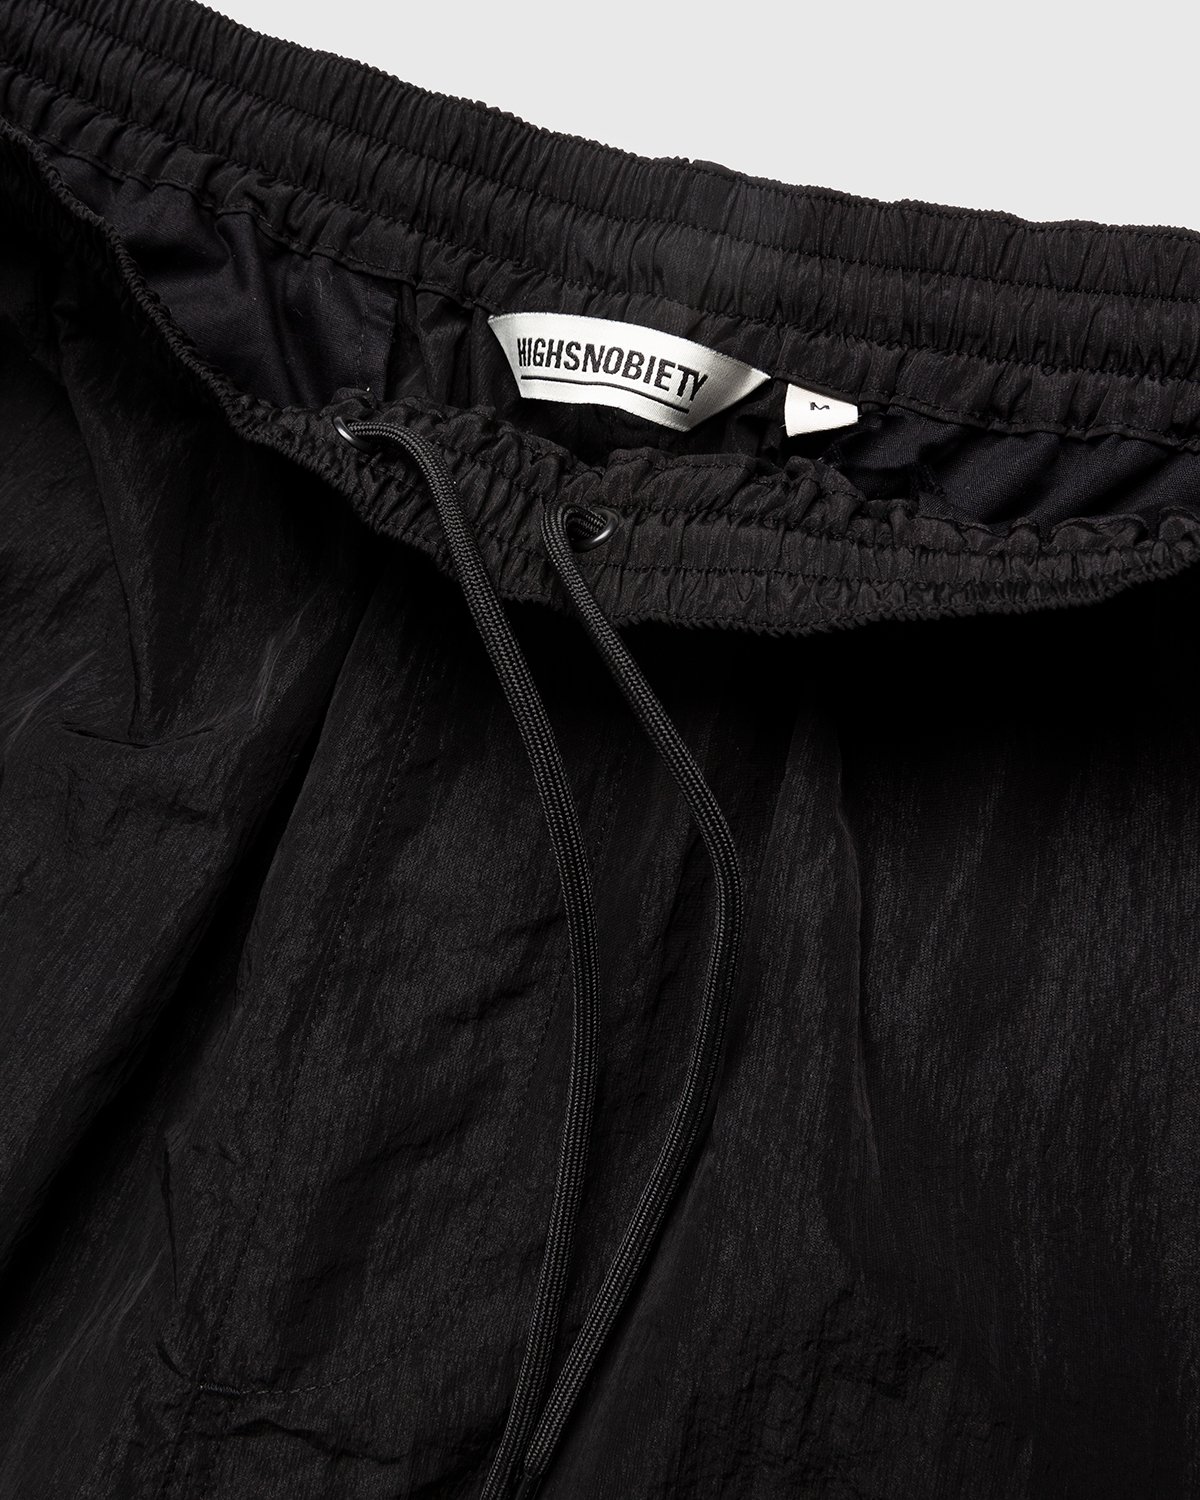 Highsnobiety - Crepe Nylon Elastic Pants Black - Clothing - Black - Image 5